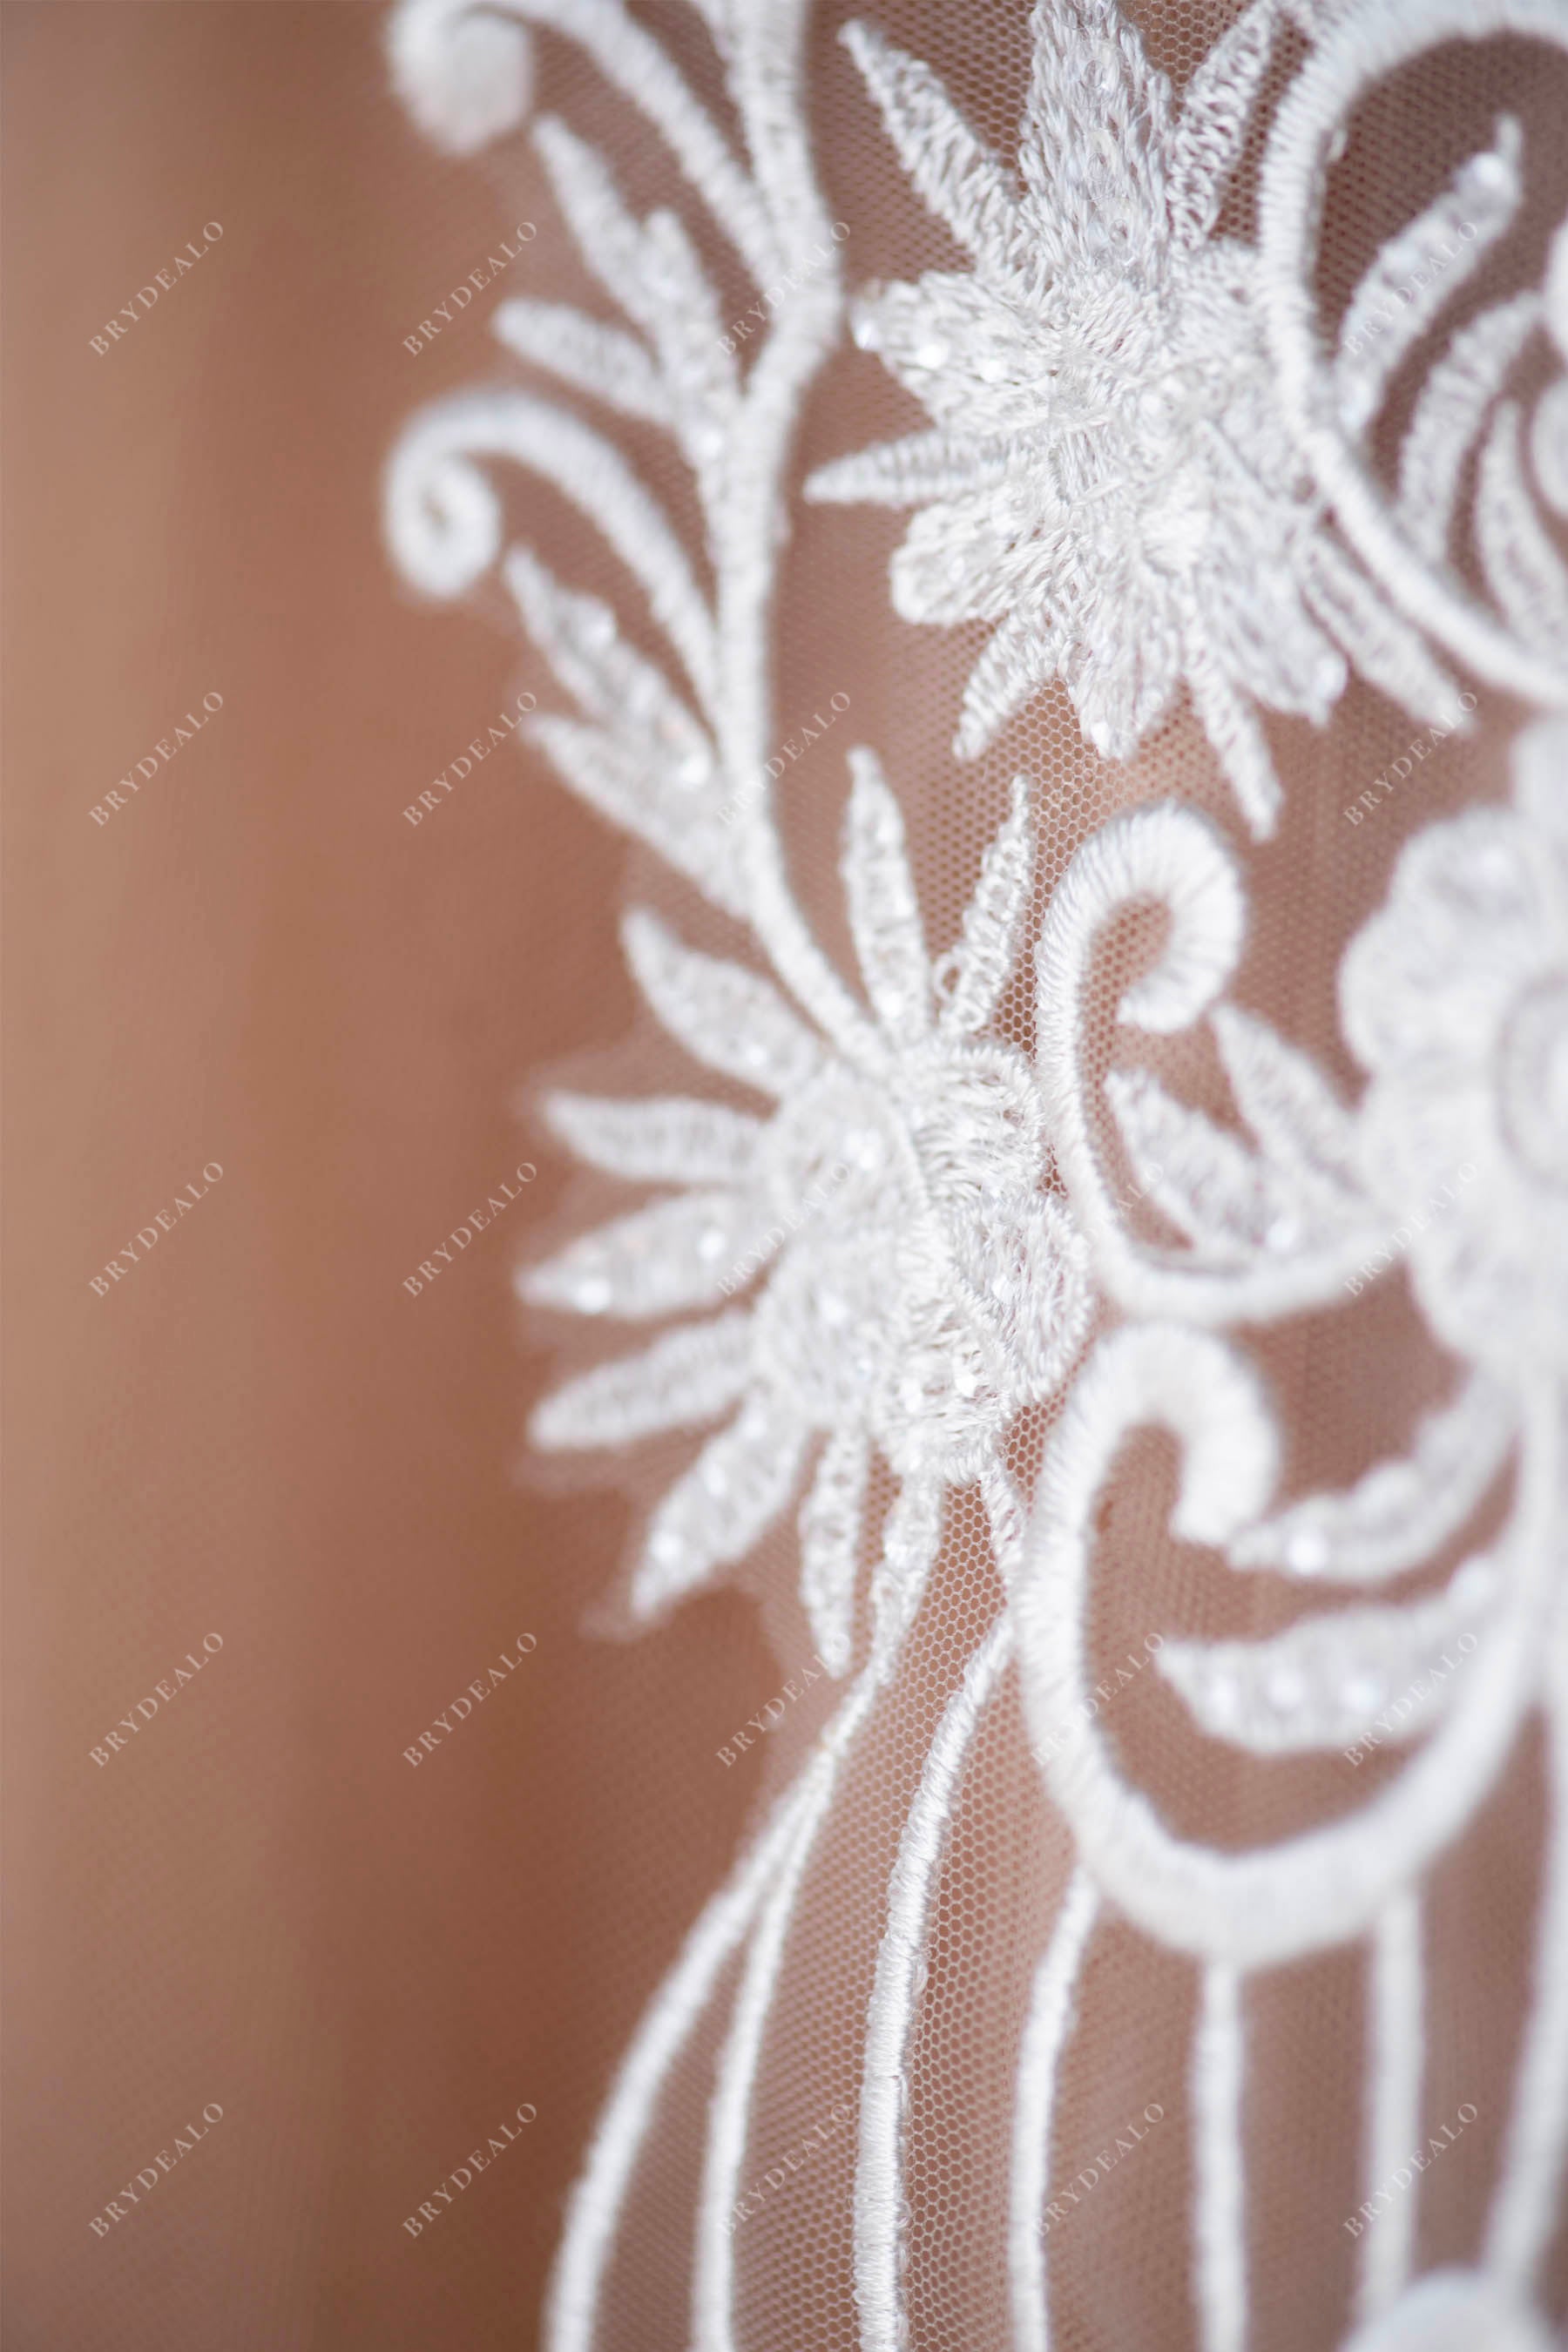 wholesale bridal lace applique for wedding dress